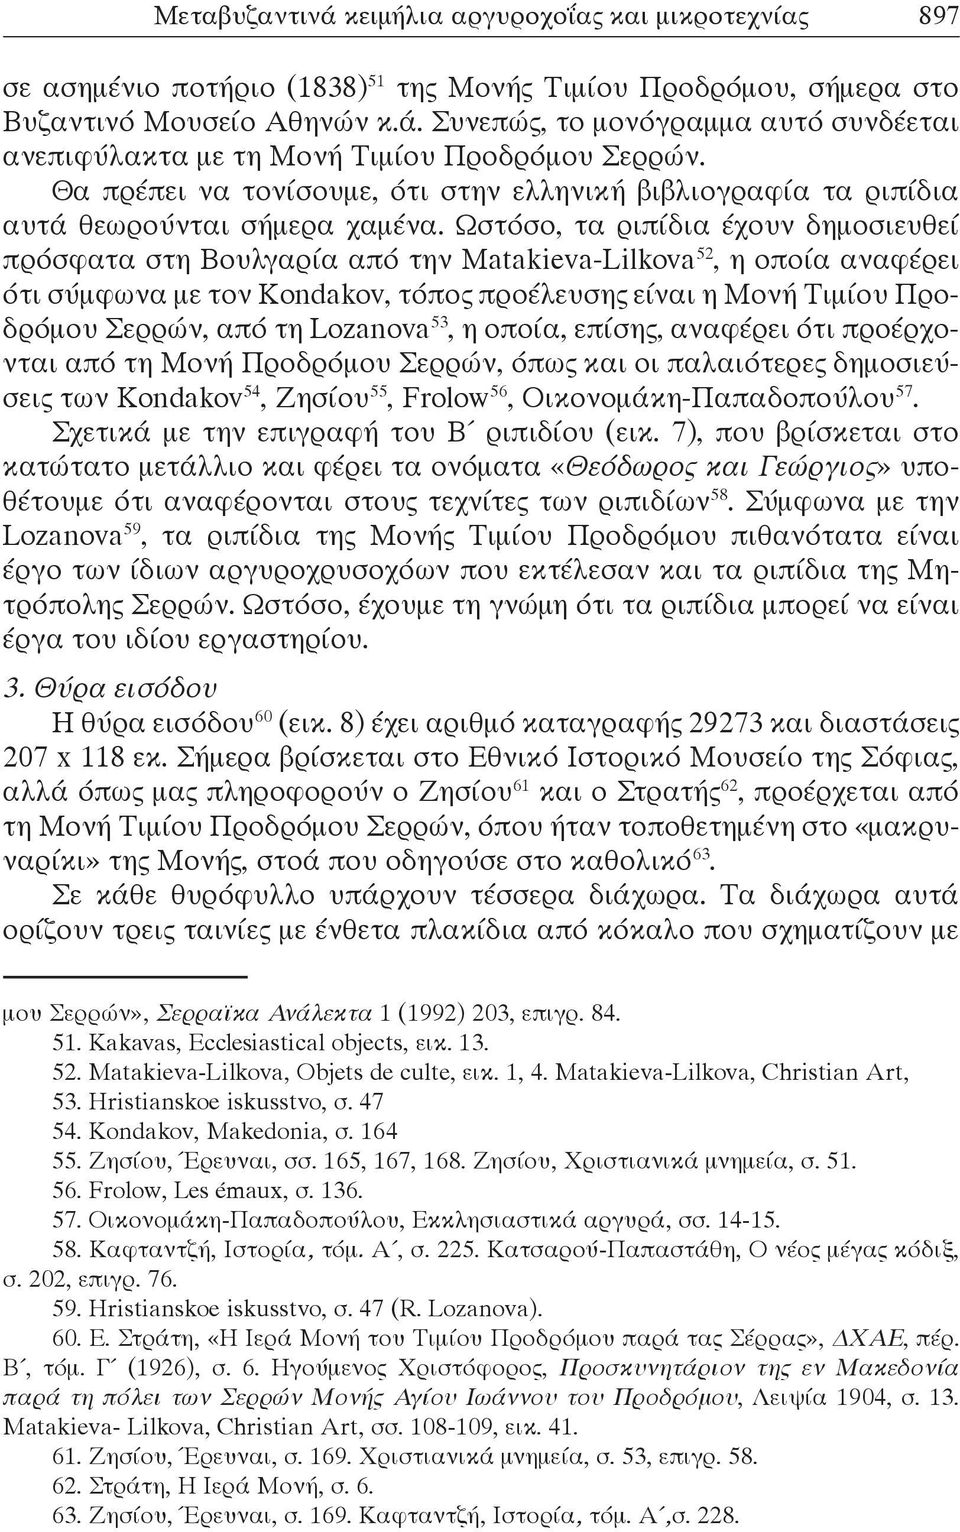 Ωστόσο, τα ριπίδια έχουν δημοσιευθεί πρόσφατα στη Βουλγαρία από την Matakieva-Lilkova 52, η οποία αναφέρει ότι σύμφωνα με τον Kondakov, τόπος προέλευσης είναι η Μονή Τιμίου Προδρόμου Σερρών, από τη